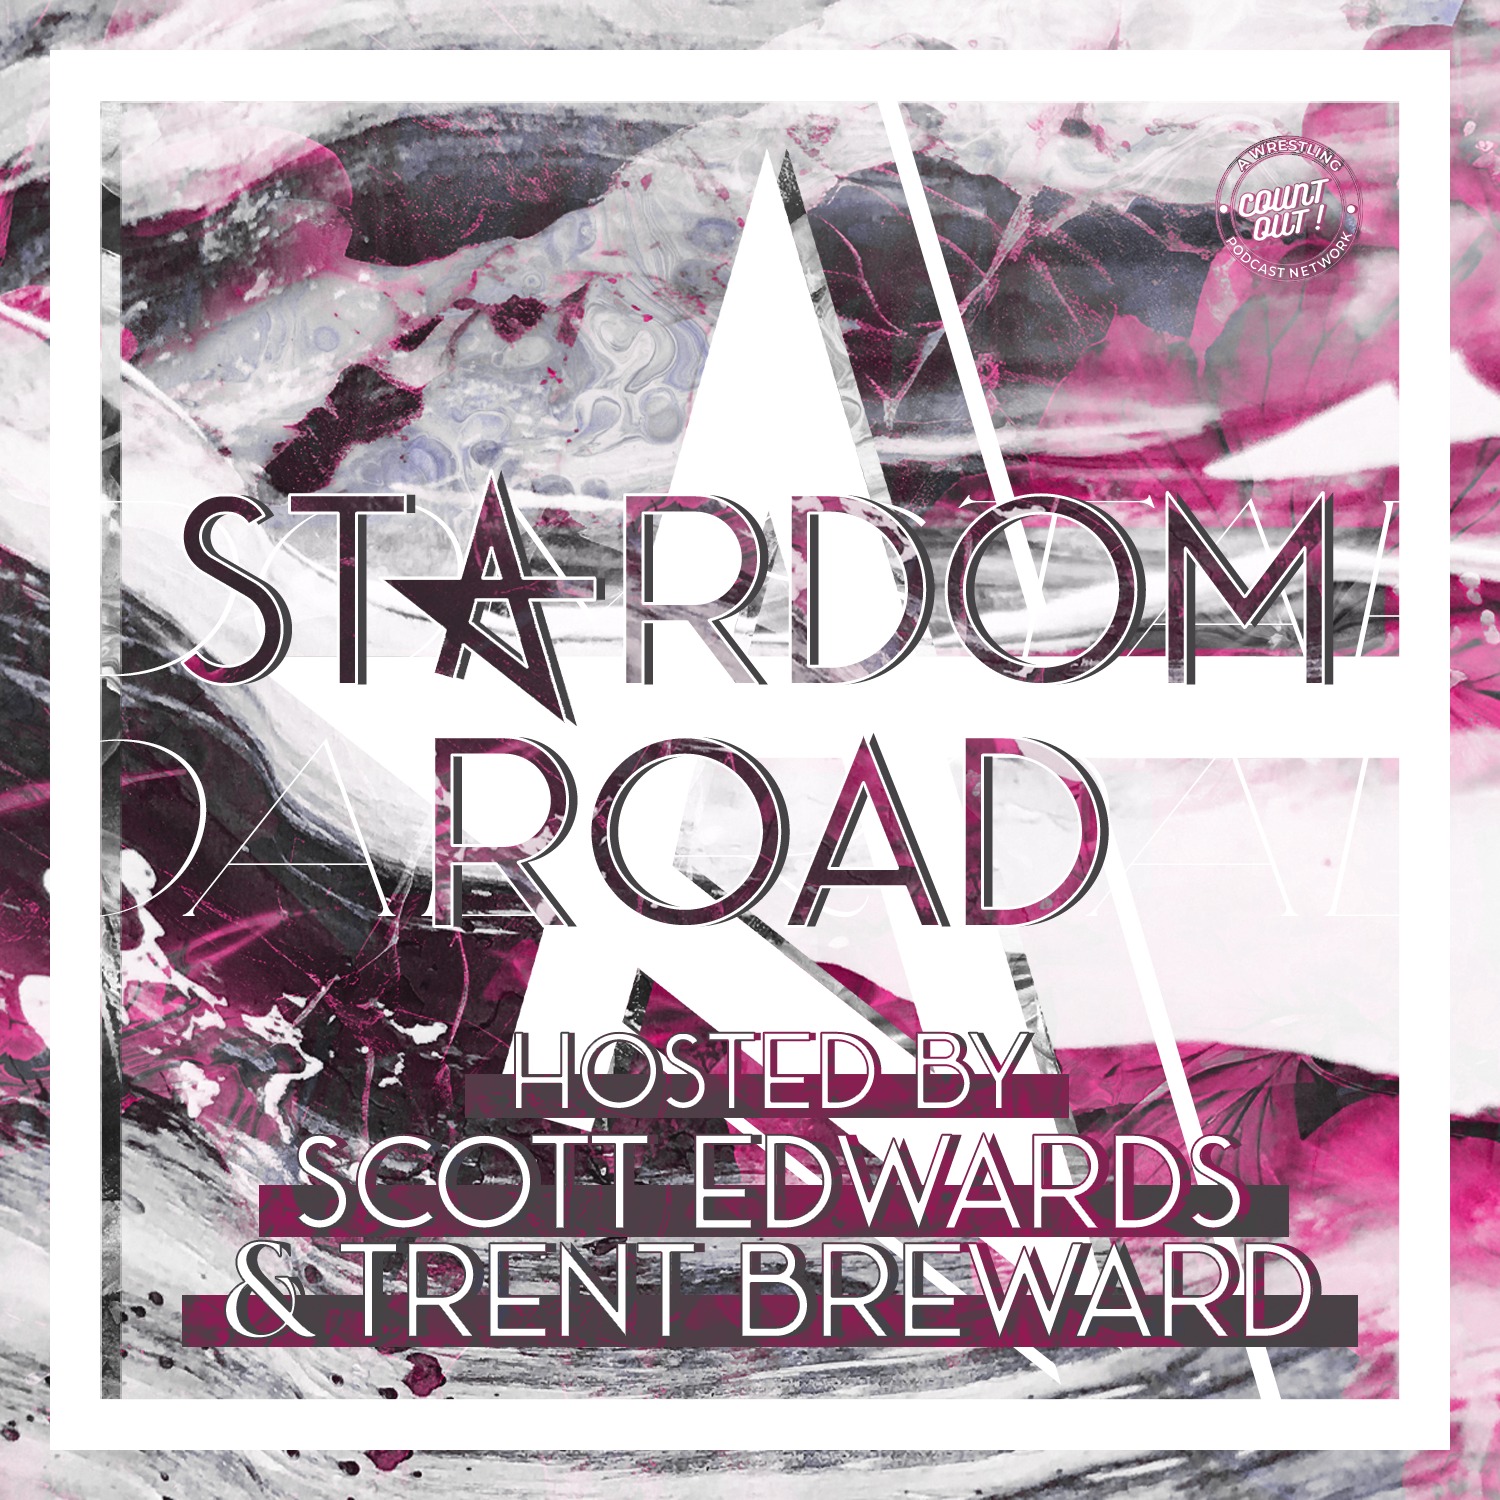 Stardom Road 36: Q&A!